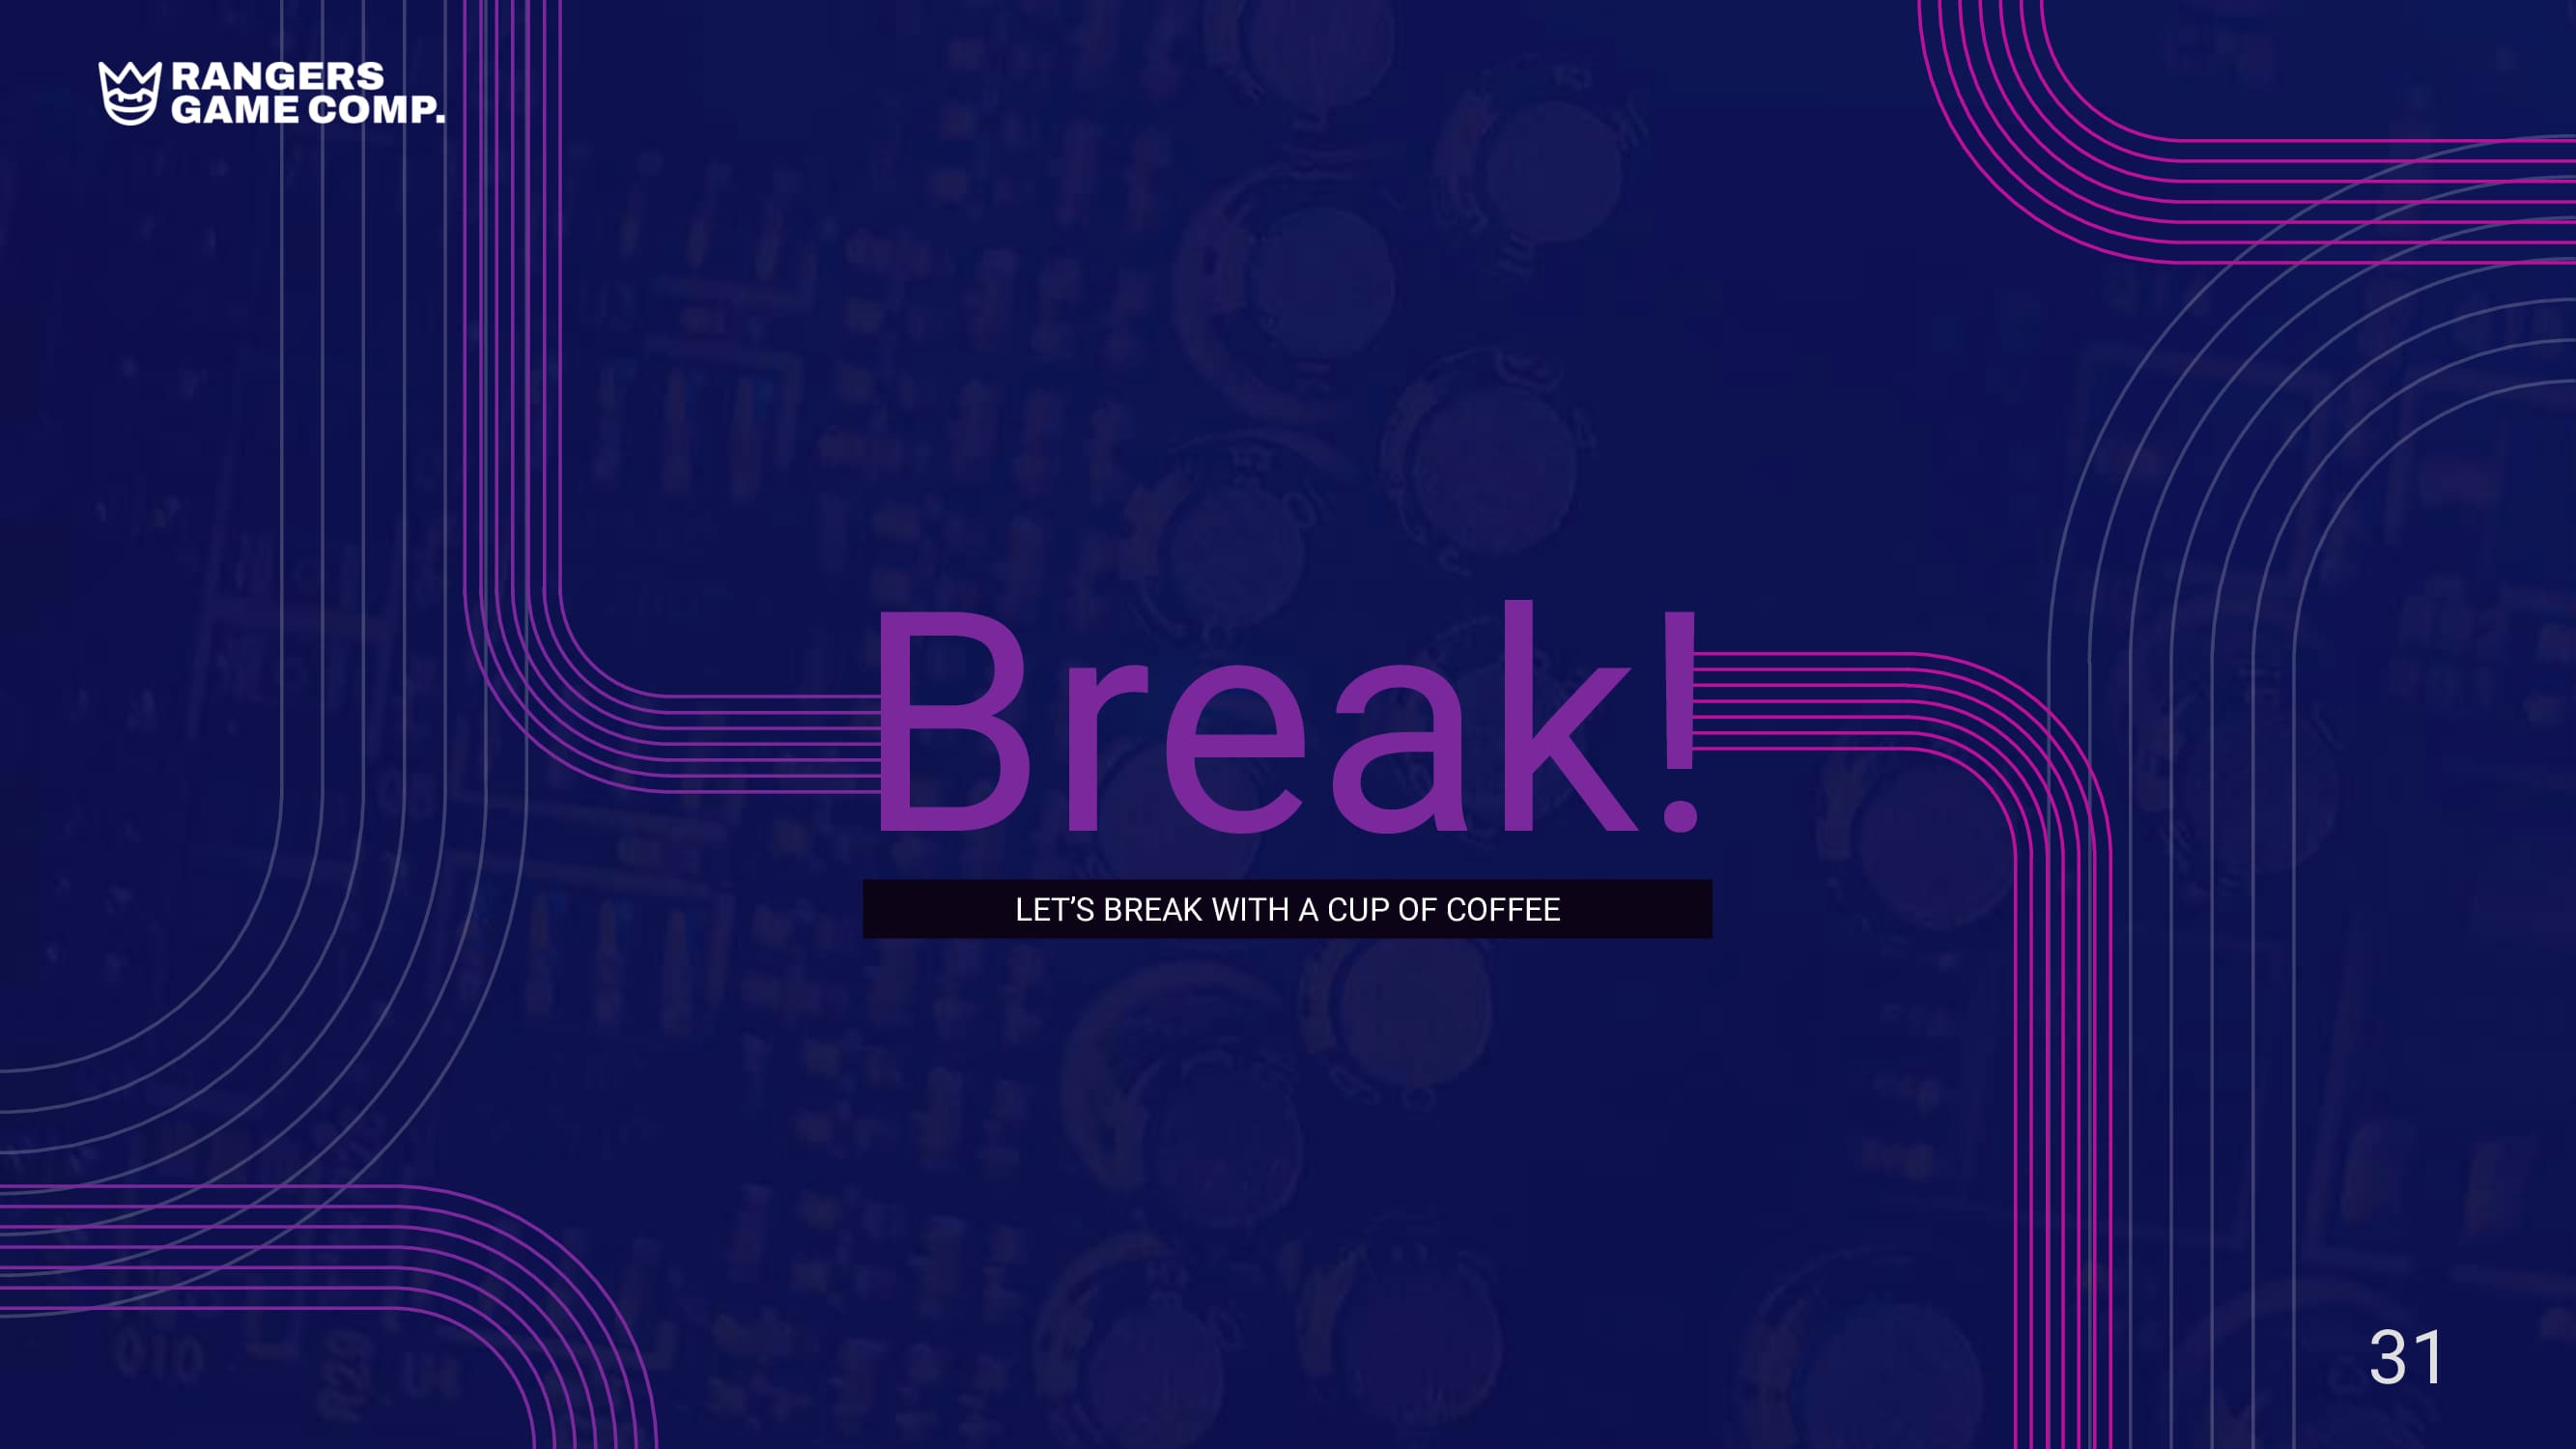 Purpe lettering "Break!" on a blue background.